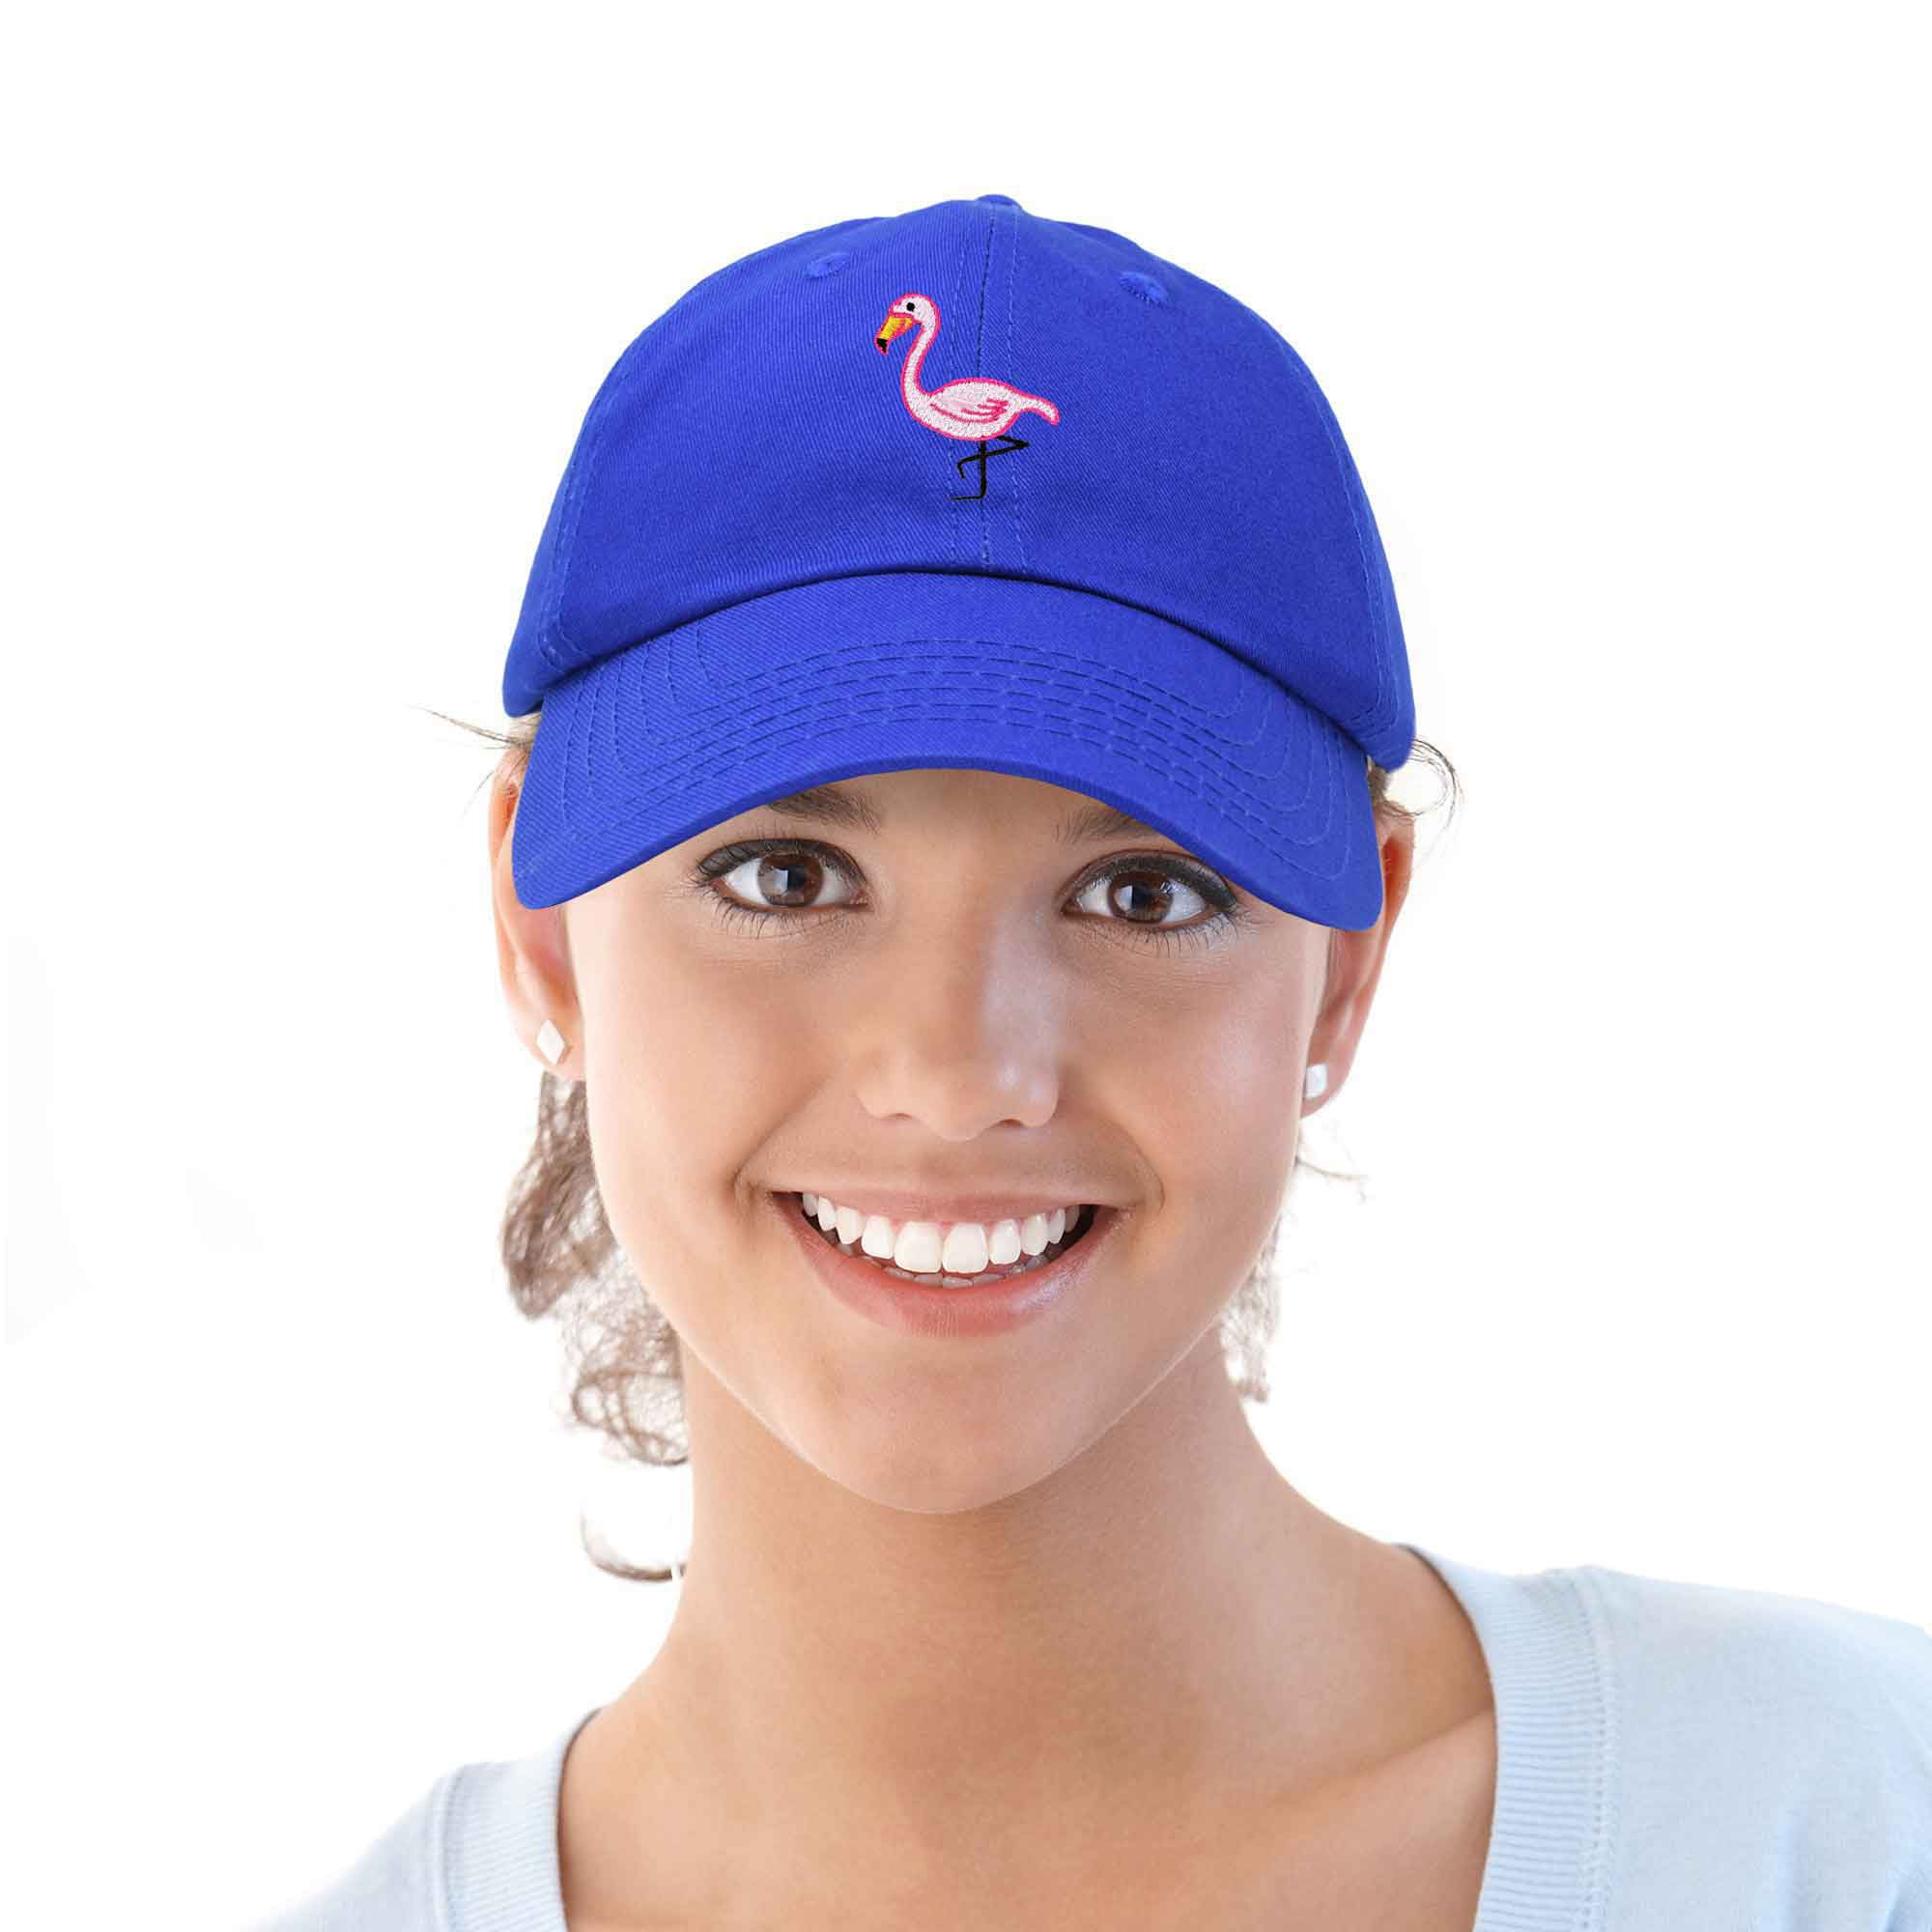 DALIX Flamingo Hat Women's Baseball Cap in Navy Blue